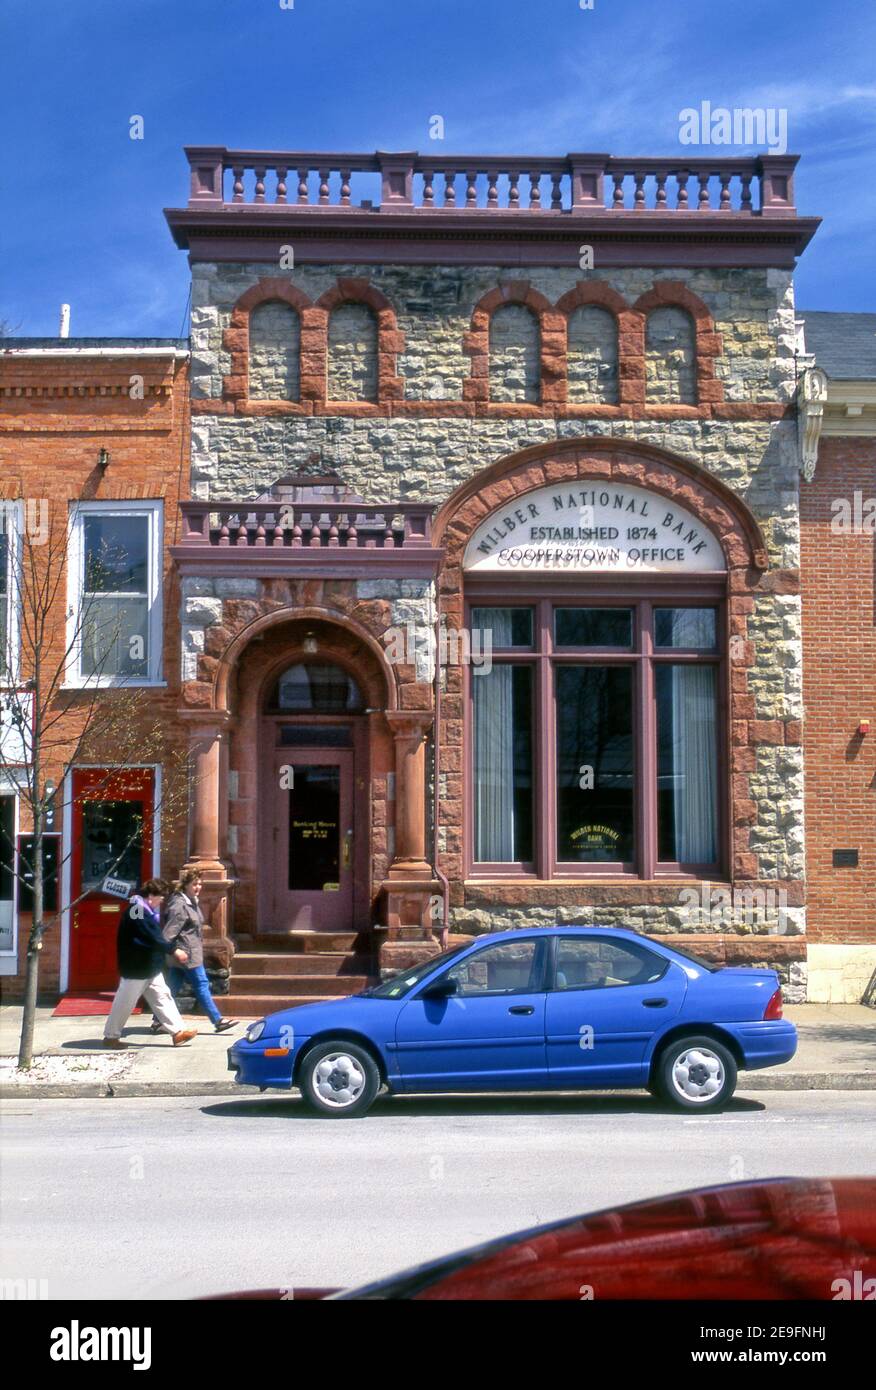 Architecture extérieure historique de la Wilber National Bank établie en 1874 à Cooperstown, New York Banque D'Images